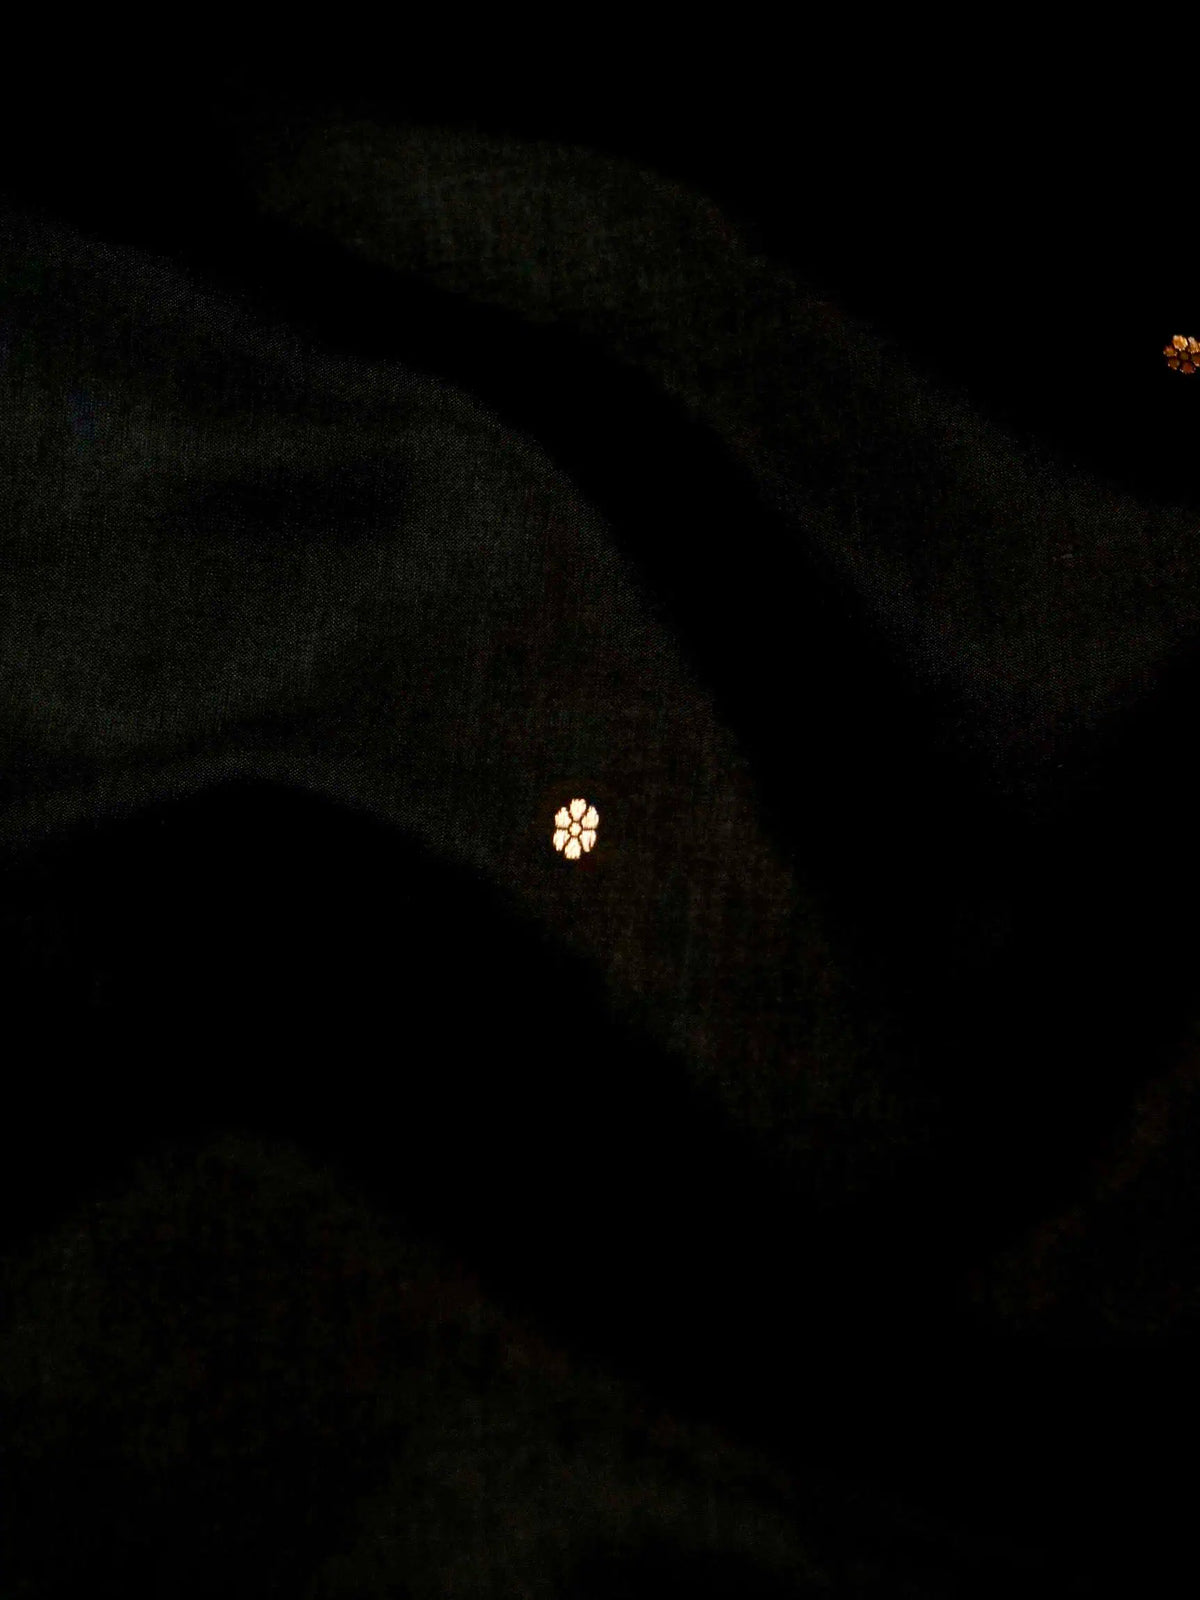 Handwoven Black Banarasi Katan Soft Silk Saree